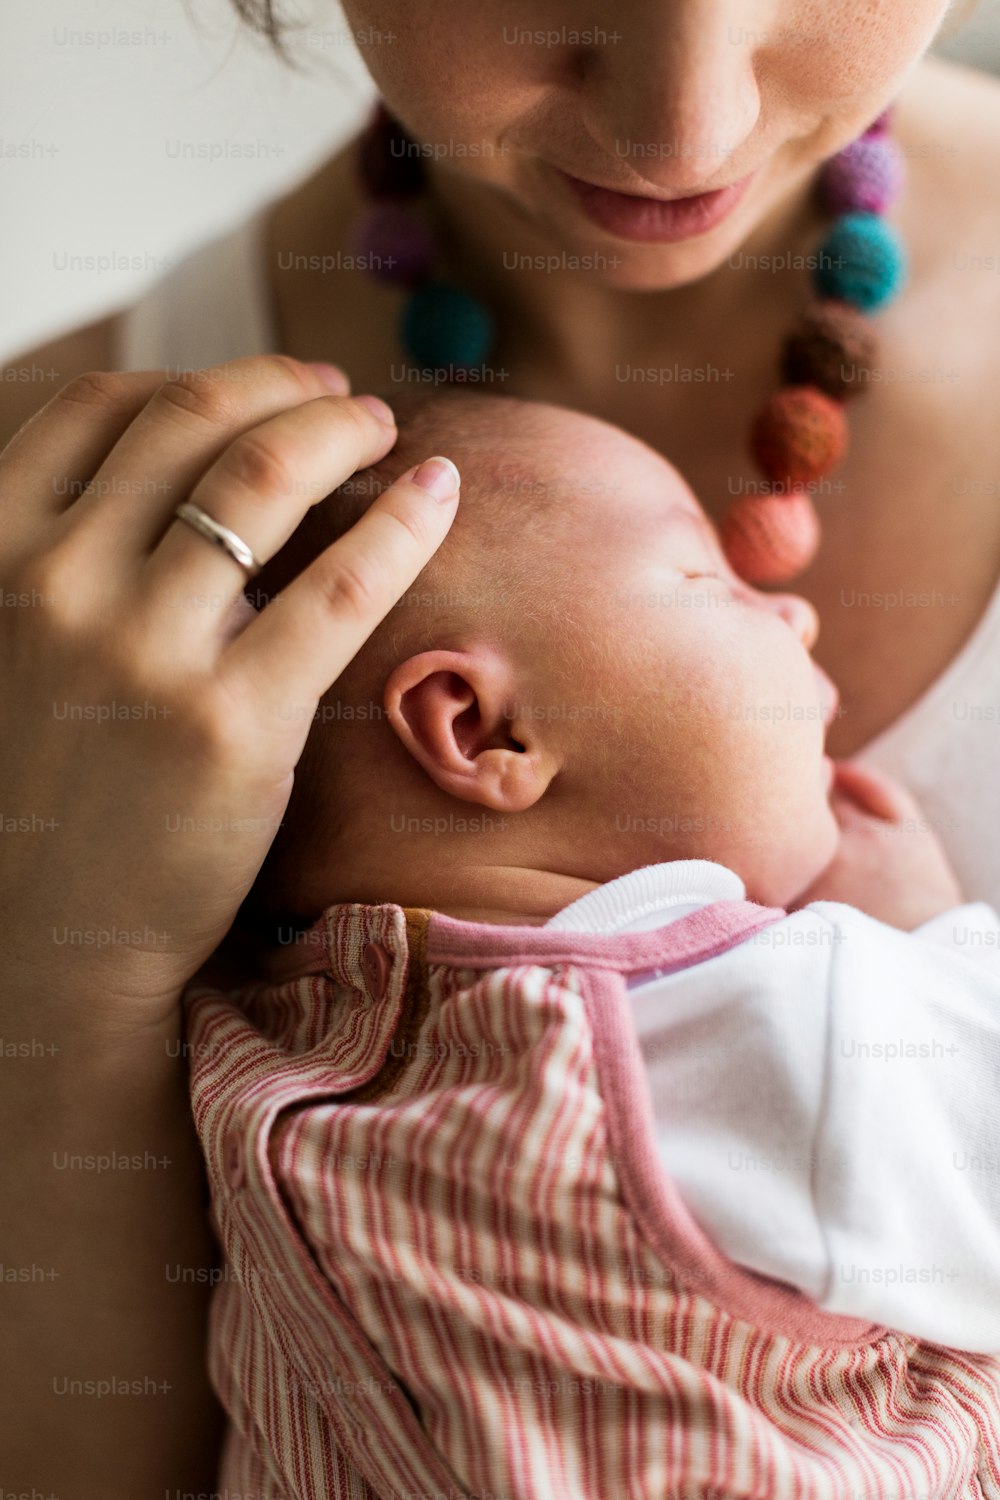 Madre joven irreconocible en casa sosteniendo a su linda bebé recién nacida.